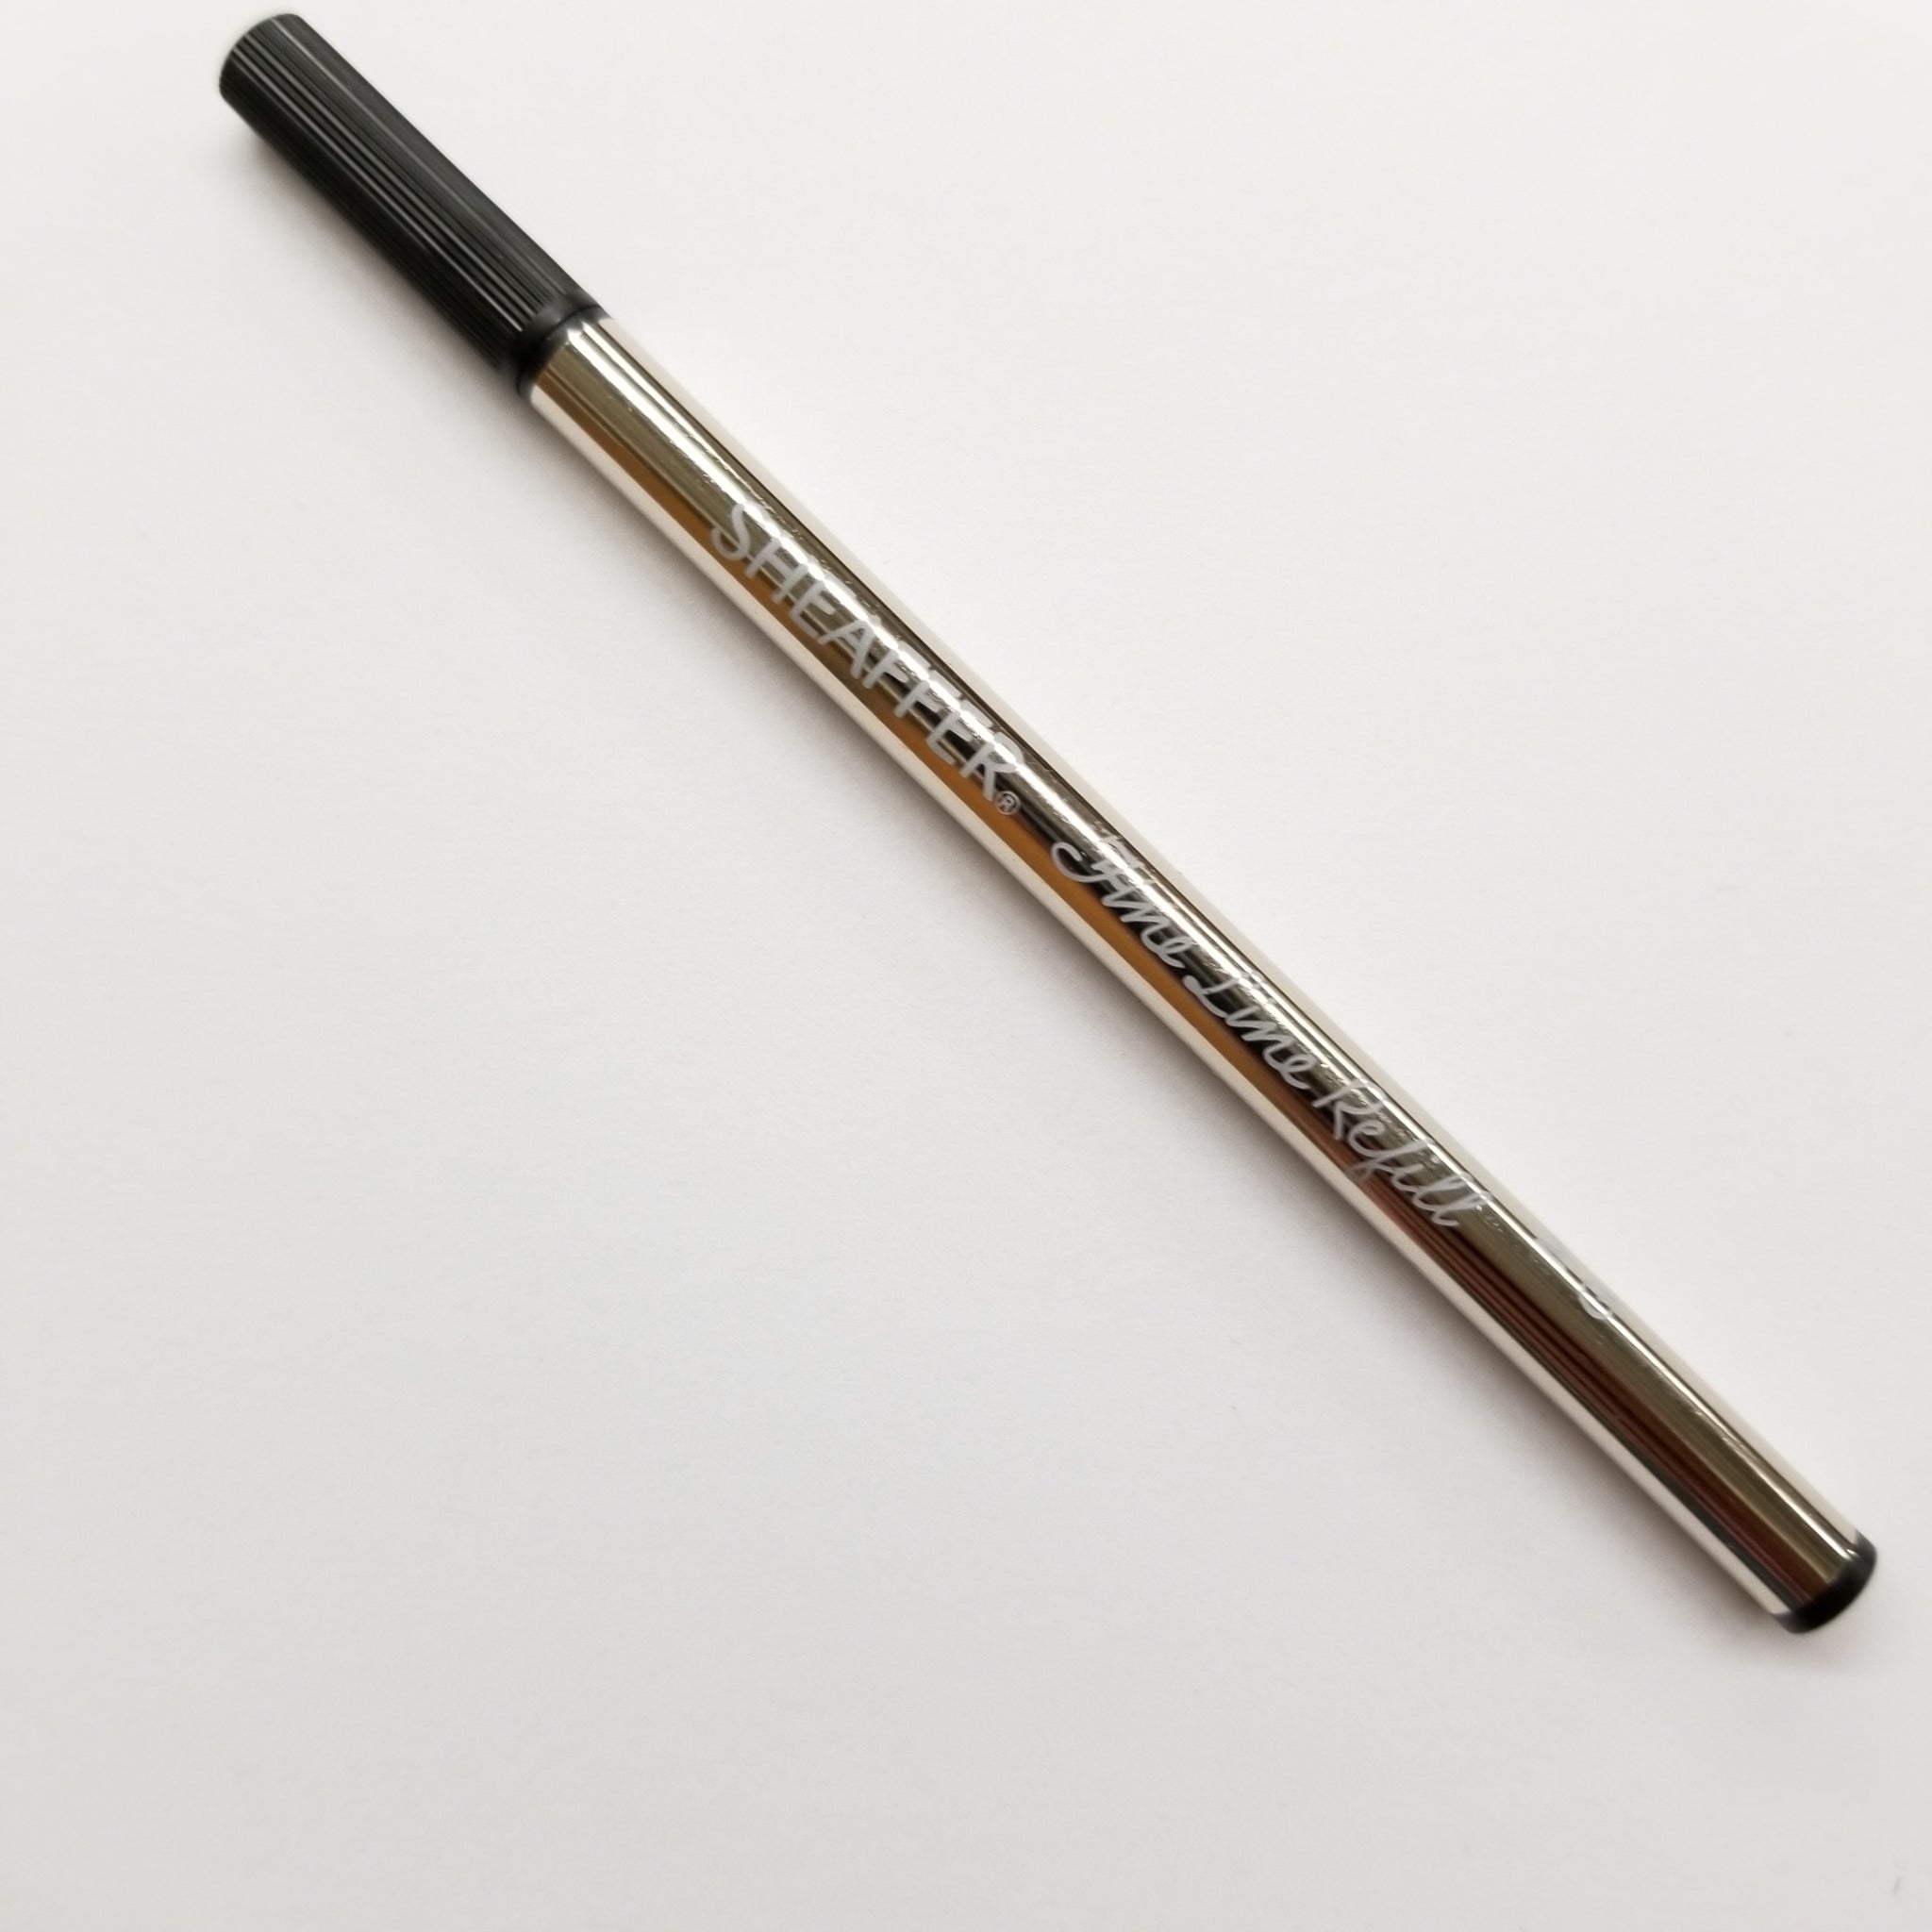 Sheaffer Sheaffer Fine Liner Pen Refill - Black (97135) freeshipping - RiNo Distribution